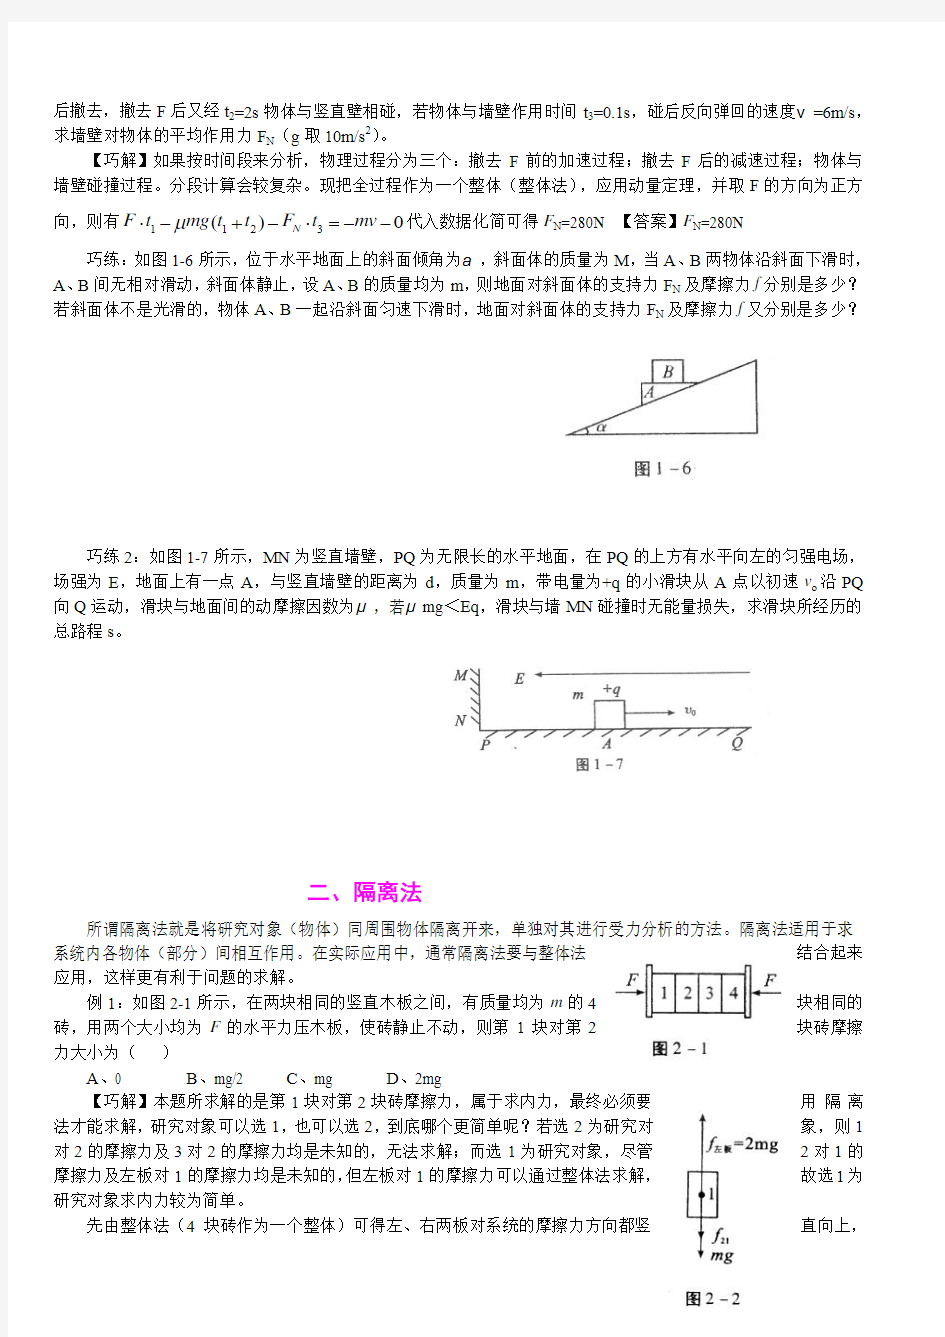 物理_高考物理解题技巧详解_侧重如何解题_34页